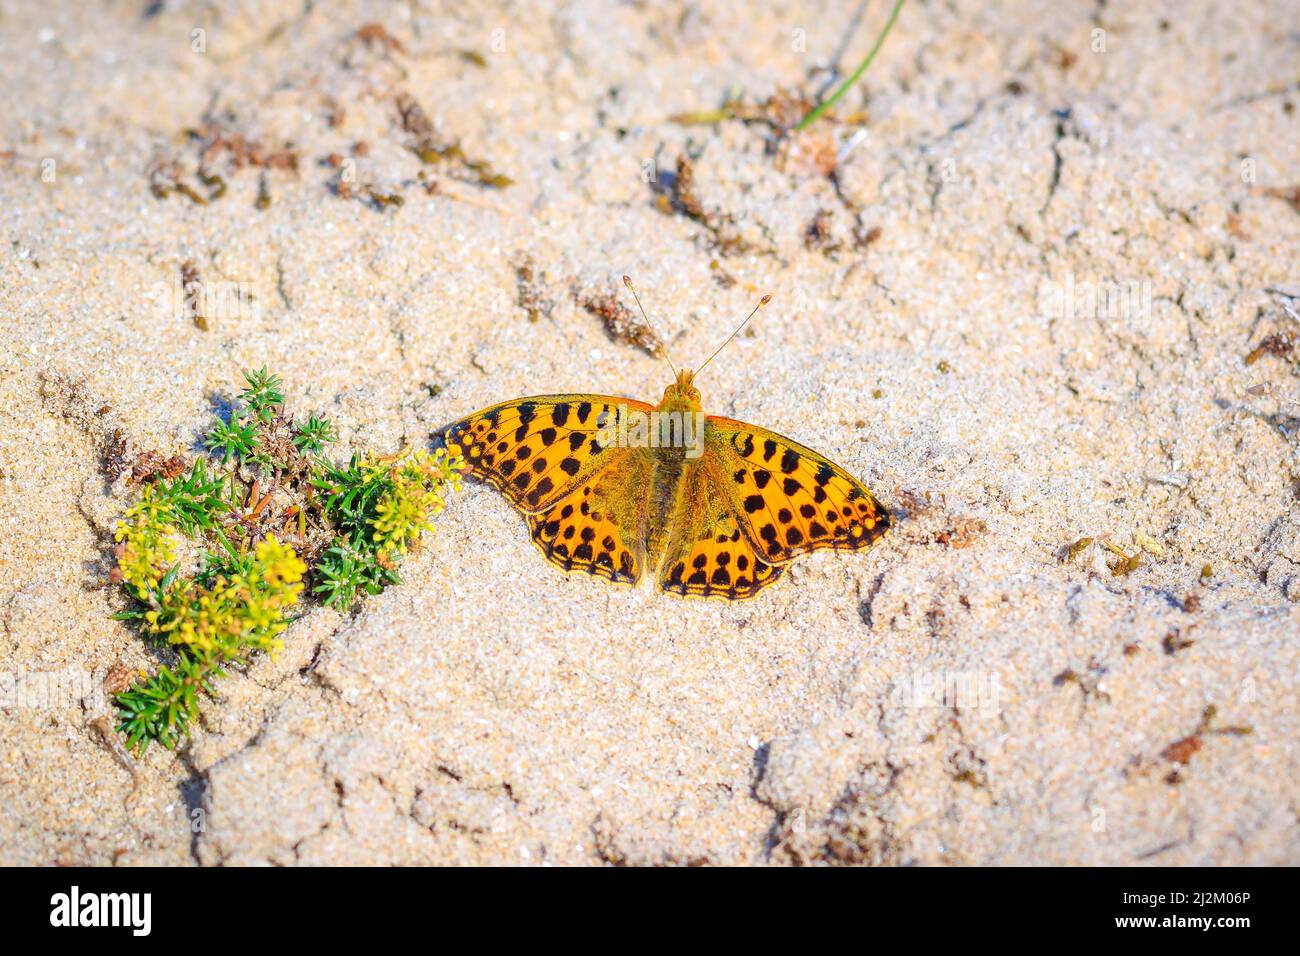 La reine d'espagne fritillary, issoria lathonia, papillon se reposant dans un pré. Paysage de dunes côtières, jour plein soleil. Banque D'Images